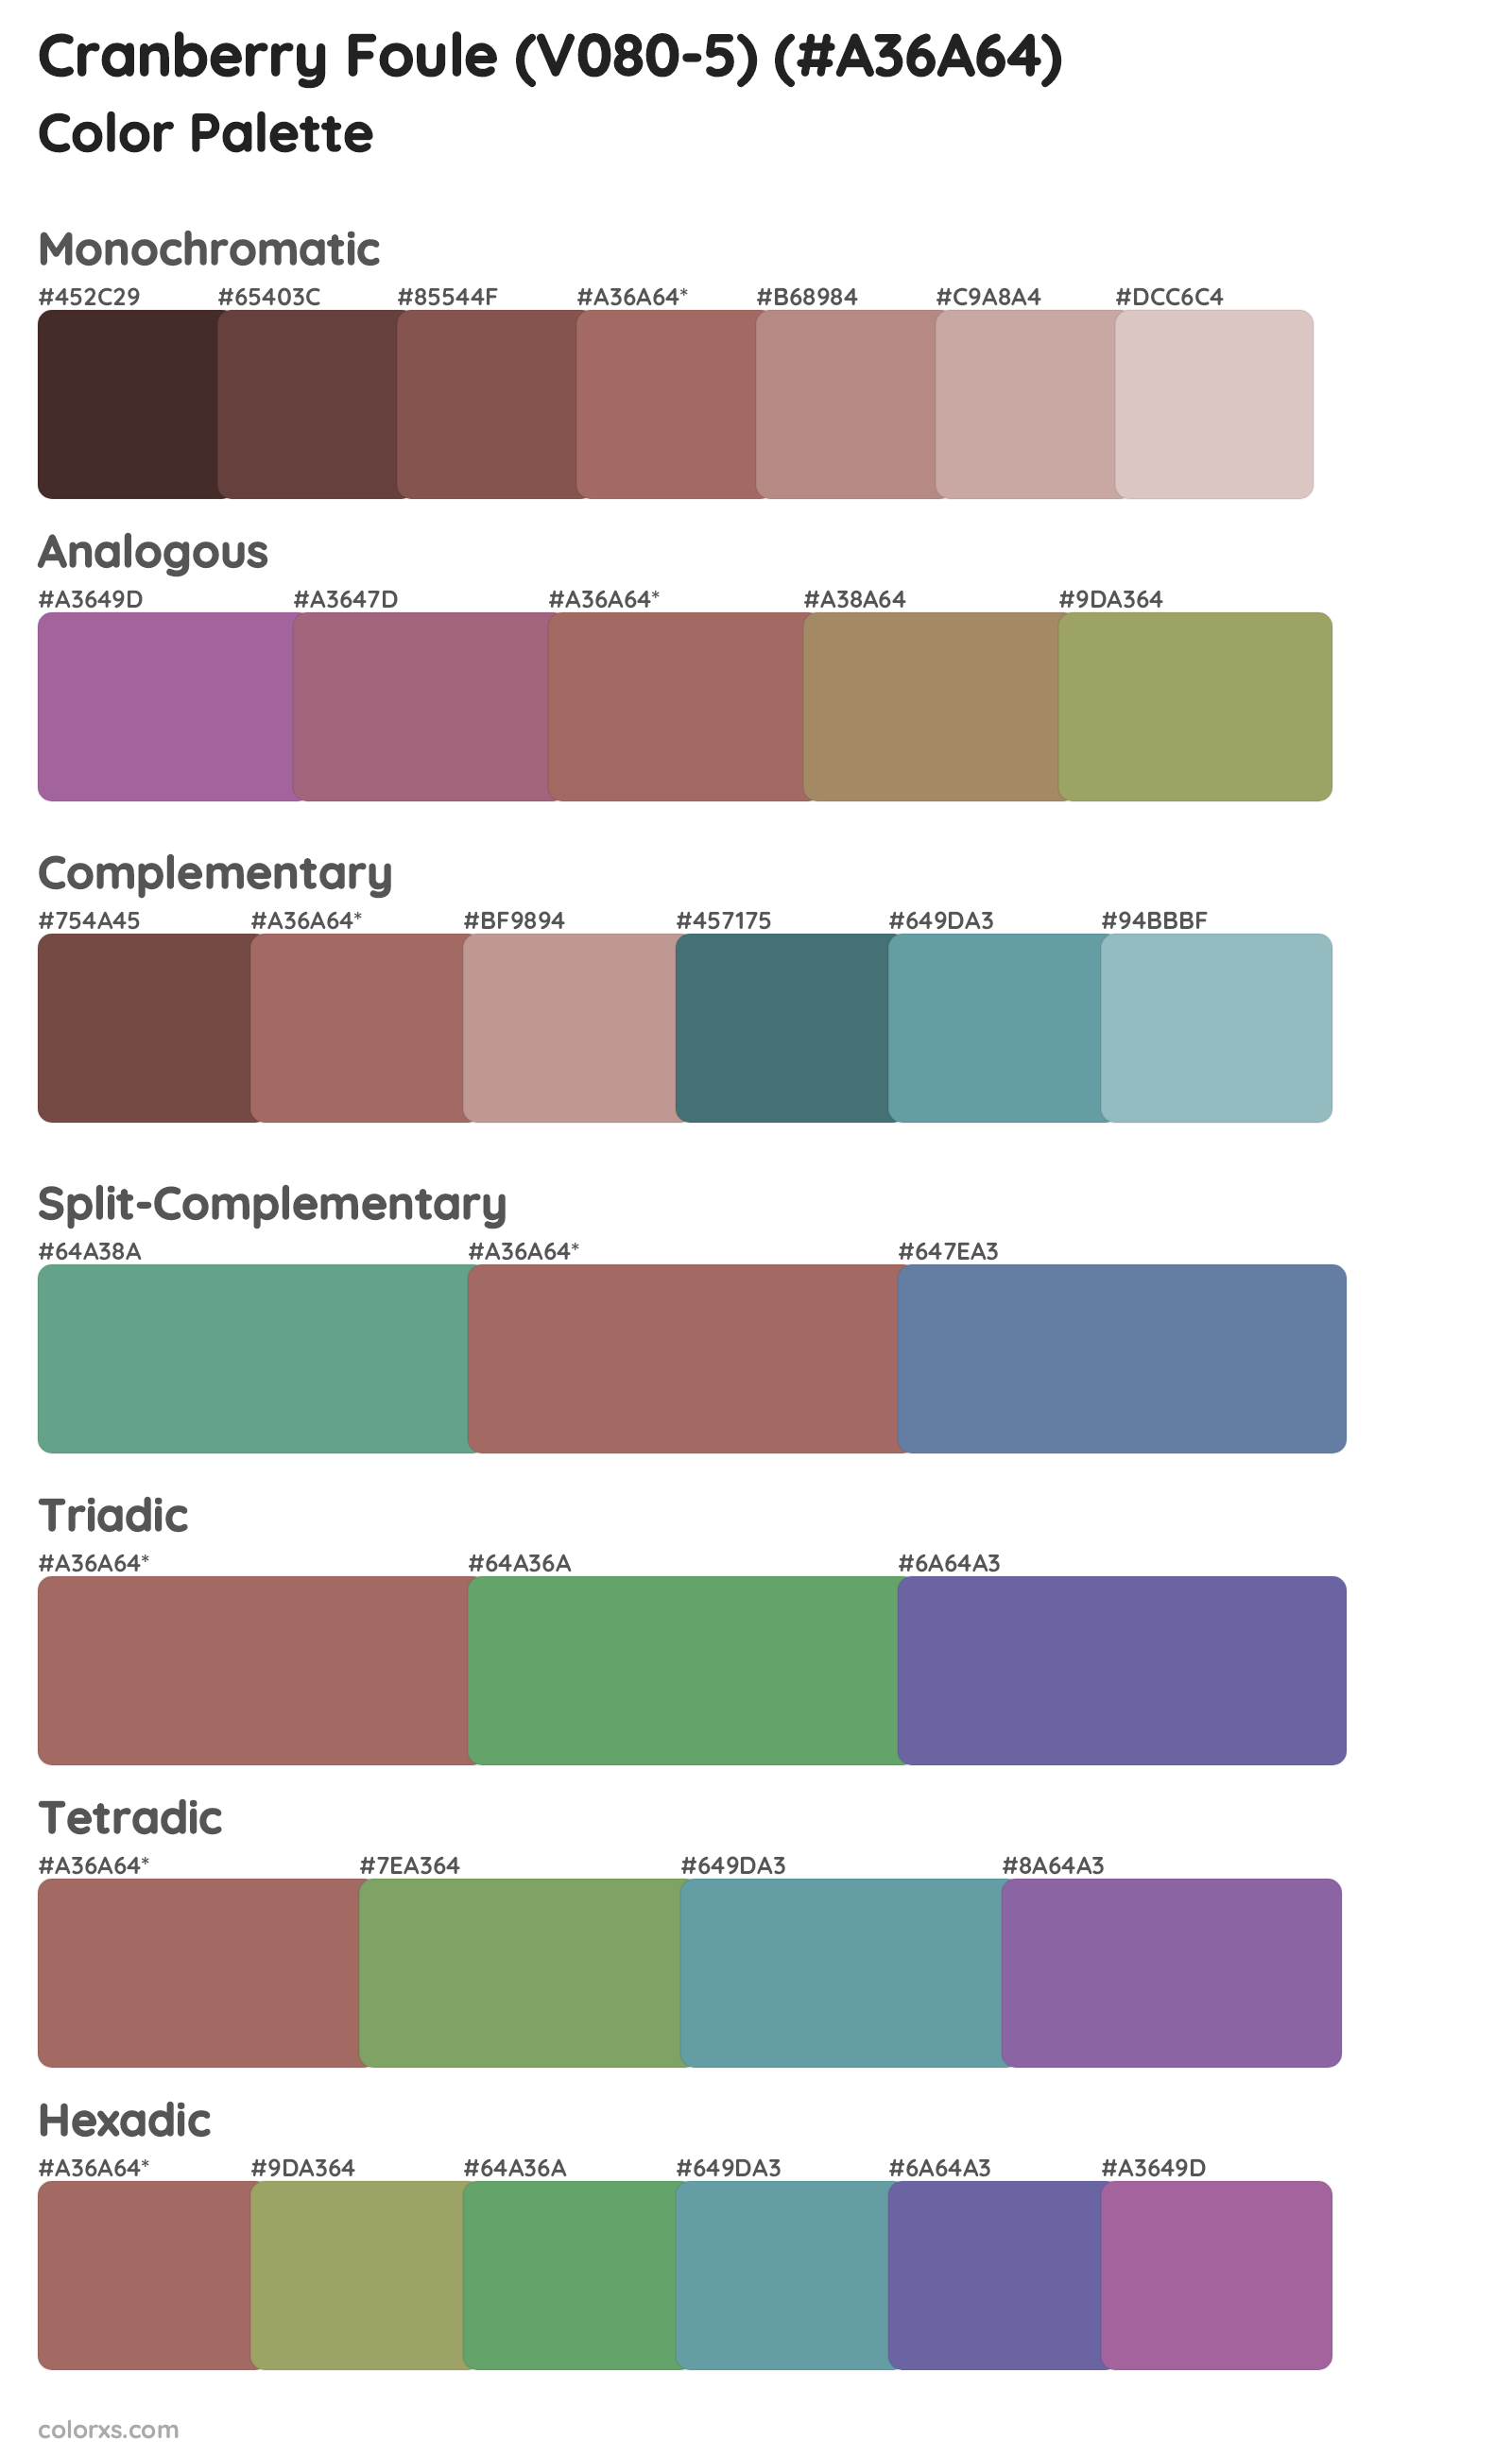 Cranberry Foule (V080-5) Color Scheme Palettes